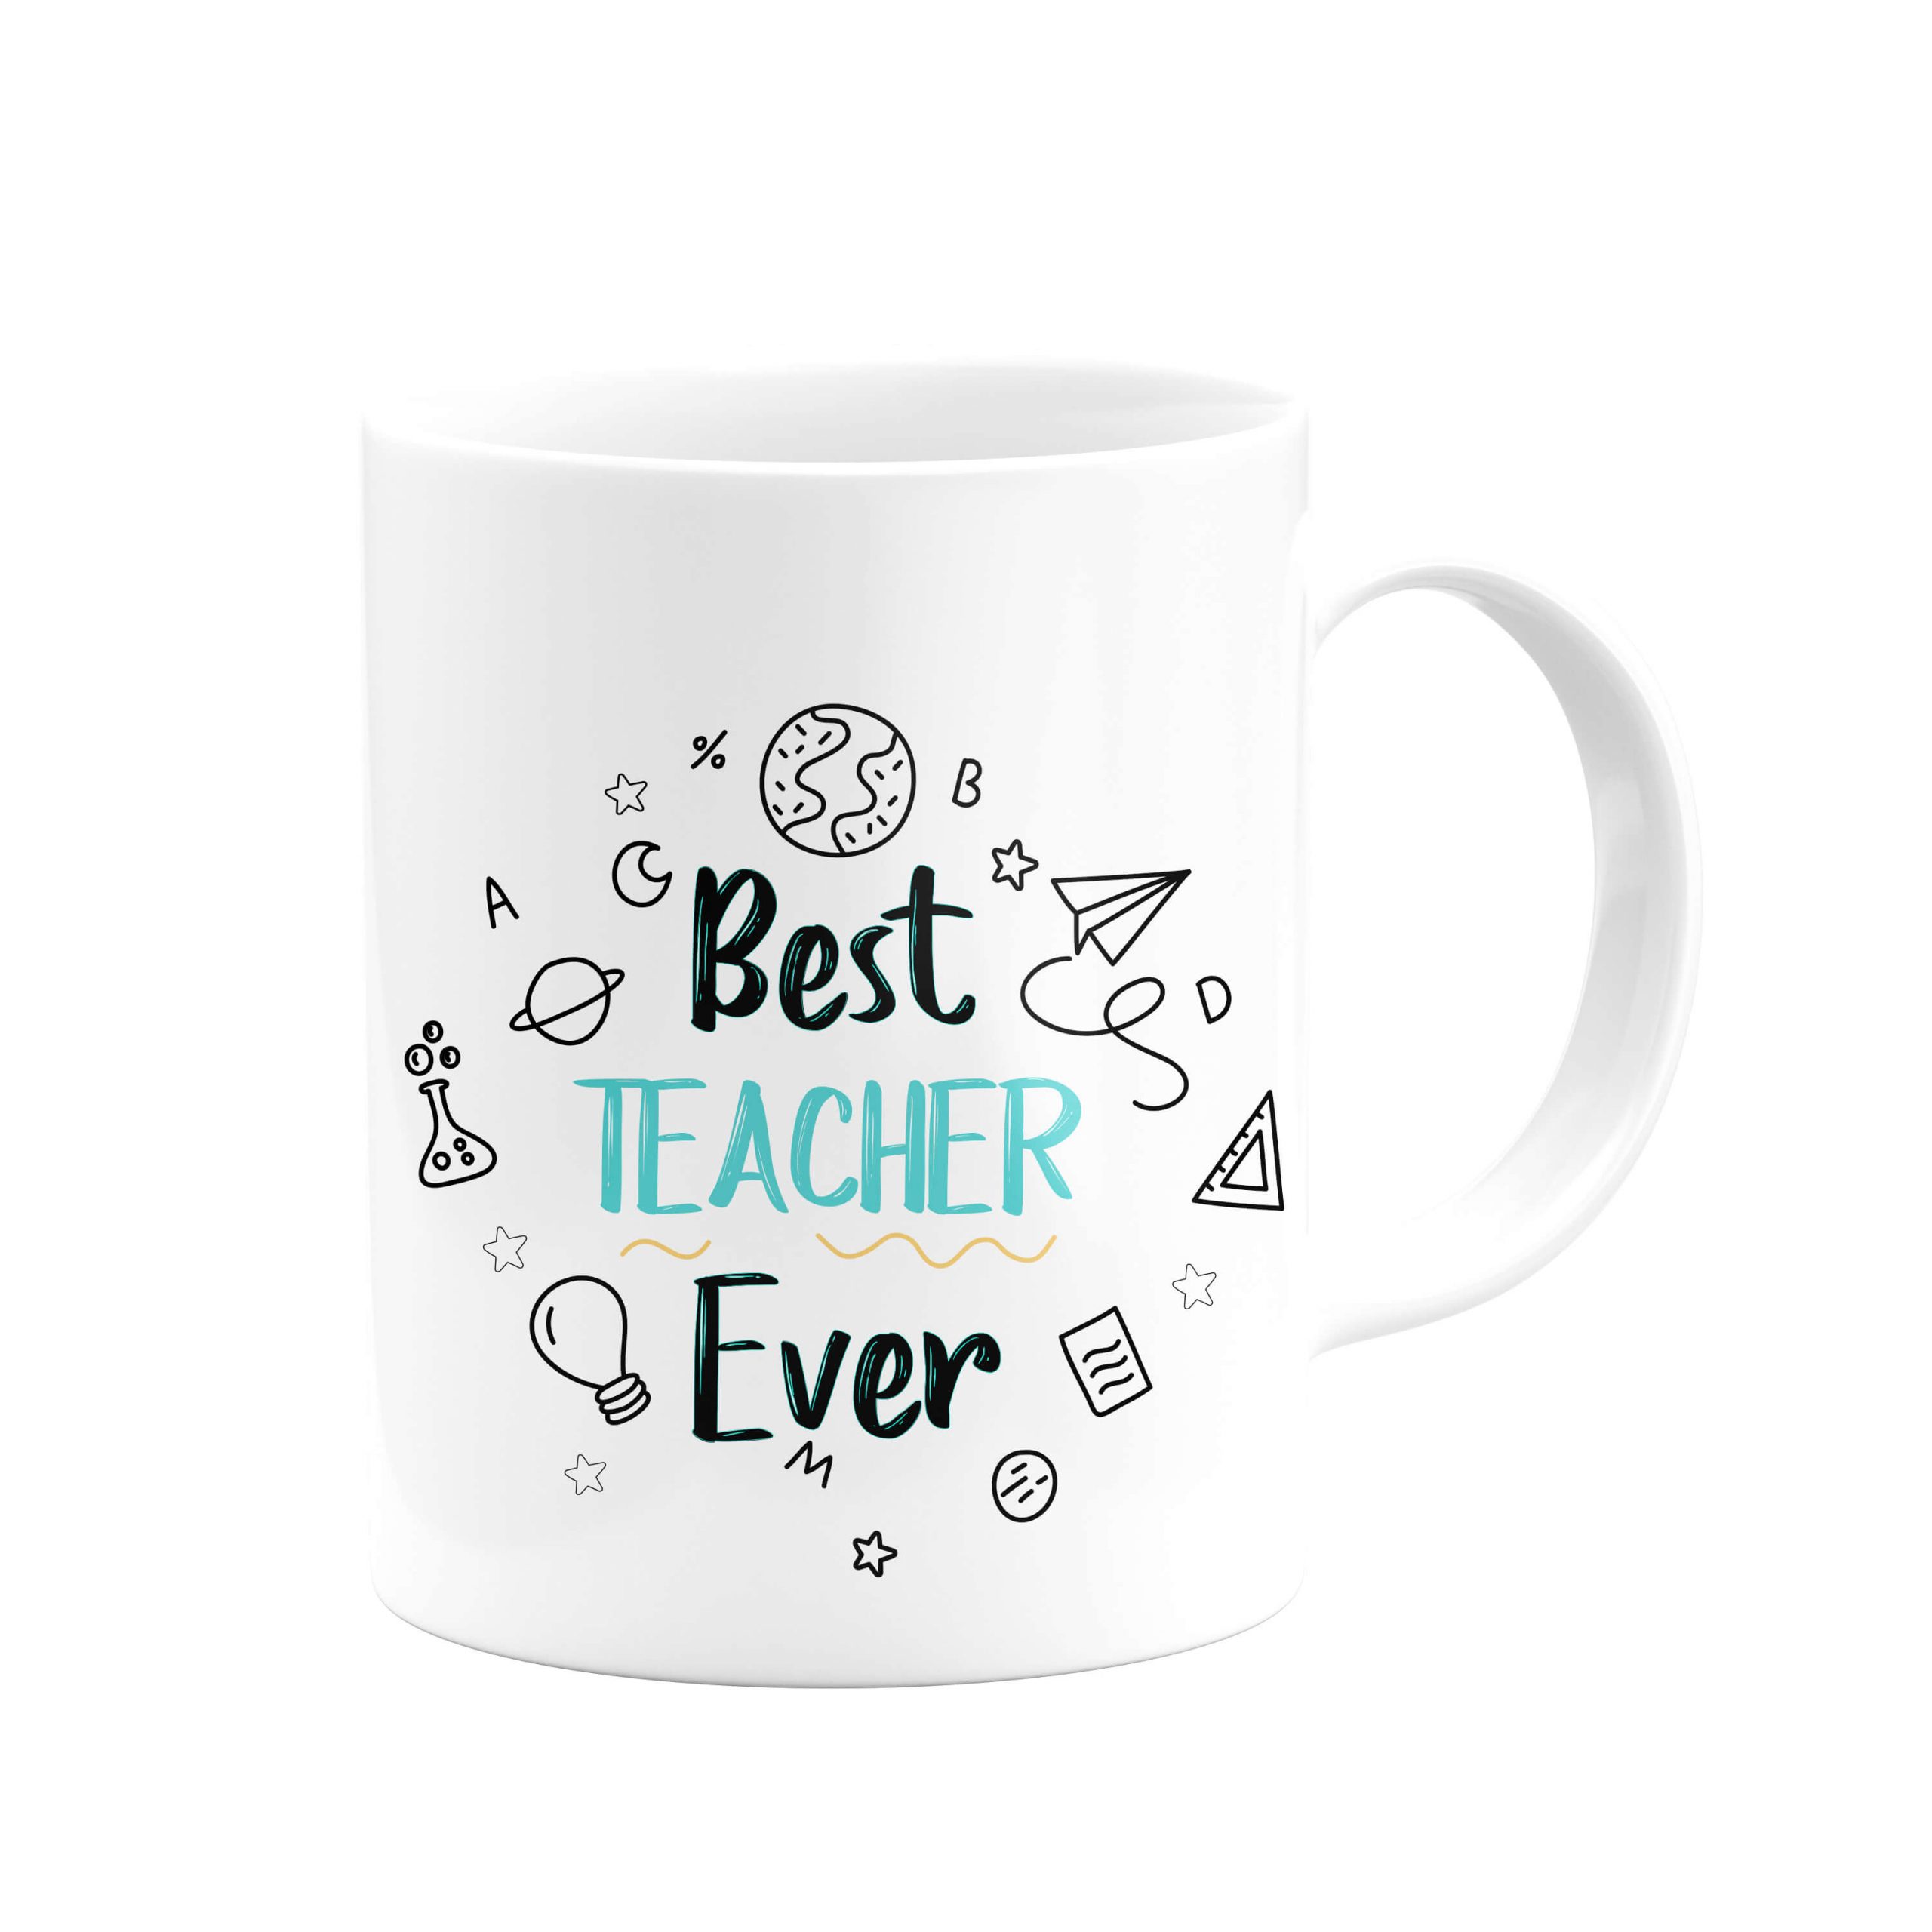 Best Teacher Ever No:1 Kupa